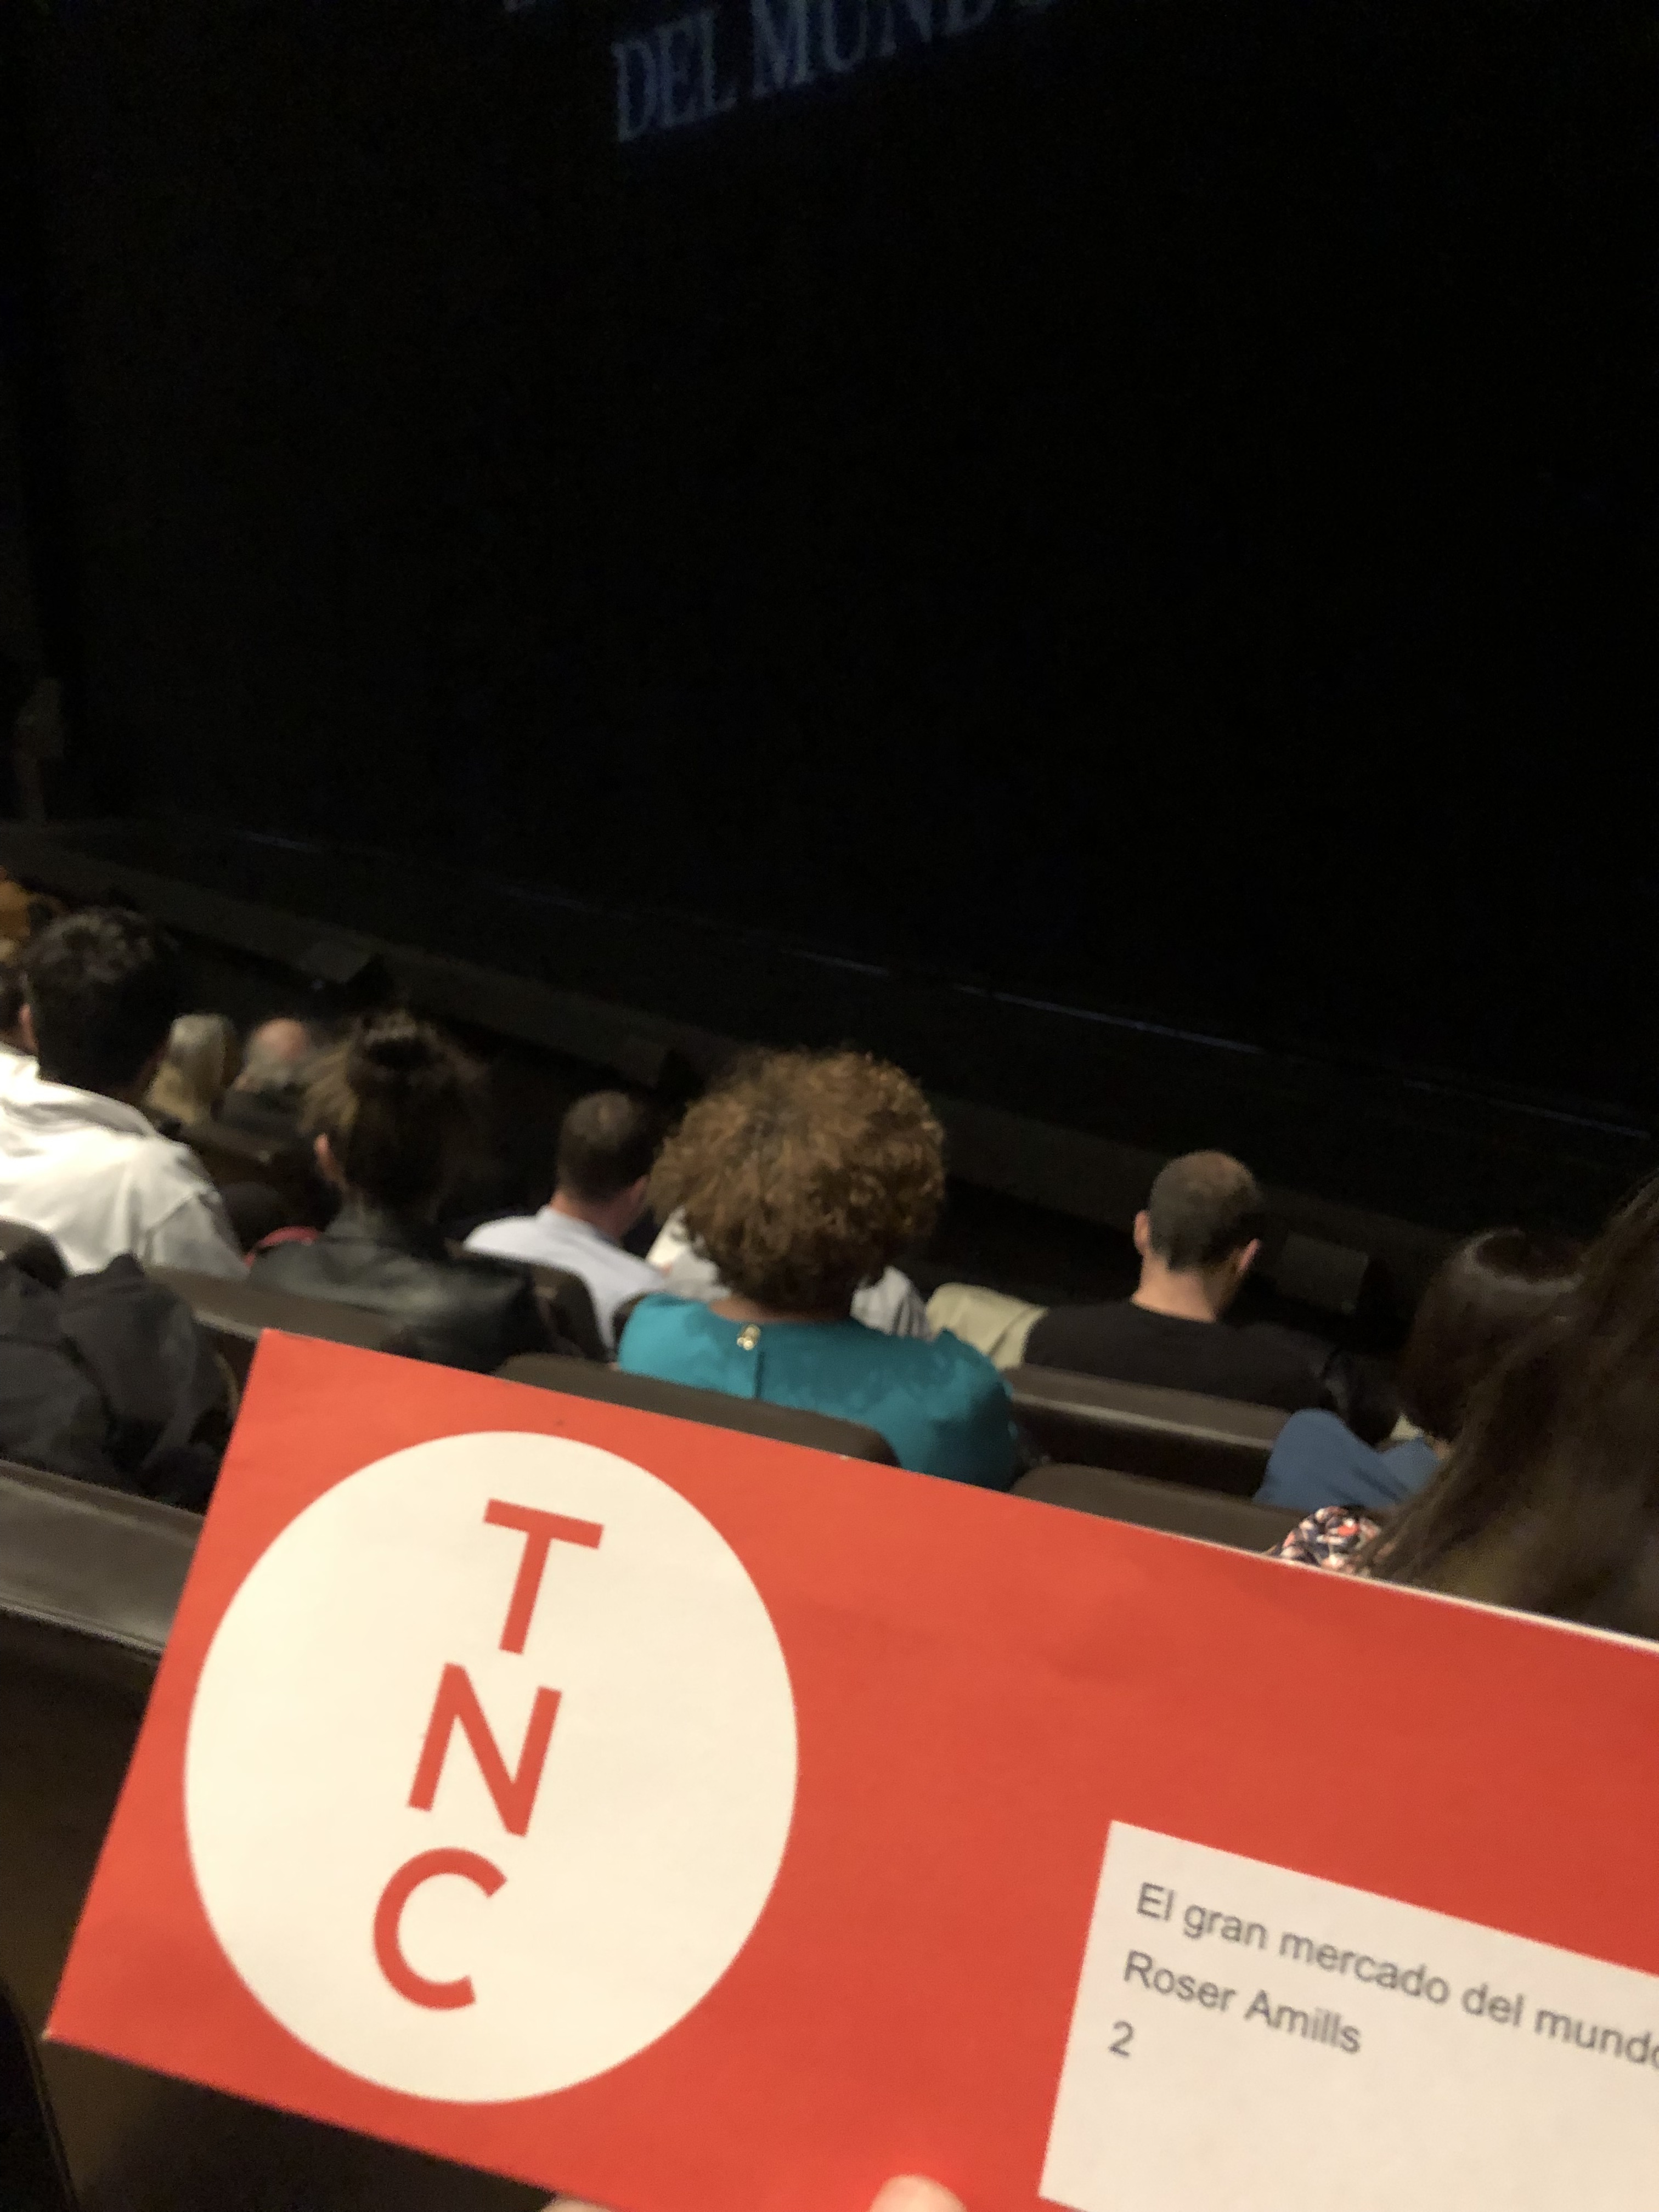 Asistimos al estreno de "El gran mercado del mundo" en el Teatre Nacional de Catalunya